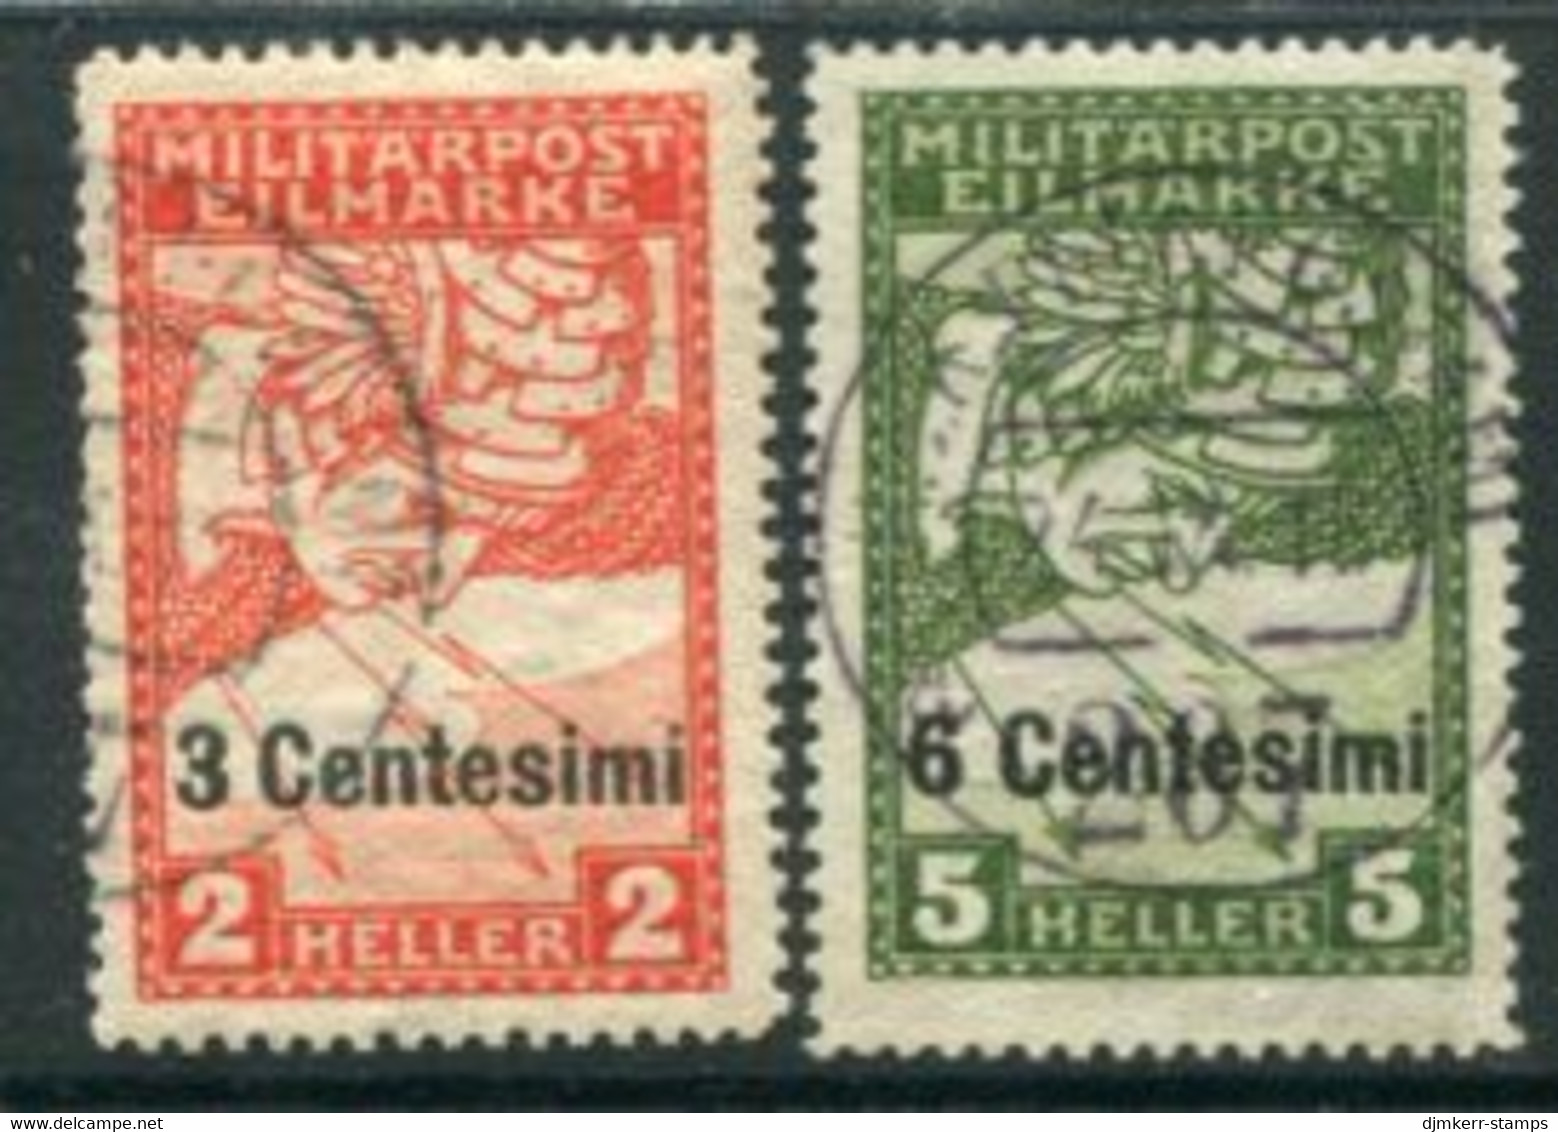 AUSTRIAN FELDPOST In ITALY 1917 Overprint On Newspaper Express Stamps. Used.  Michel 24-25 - Gebruikt